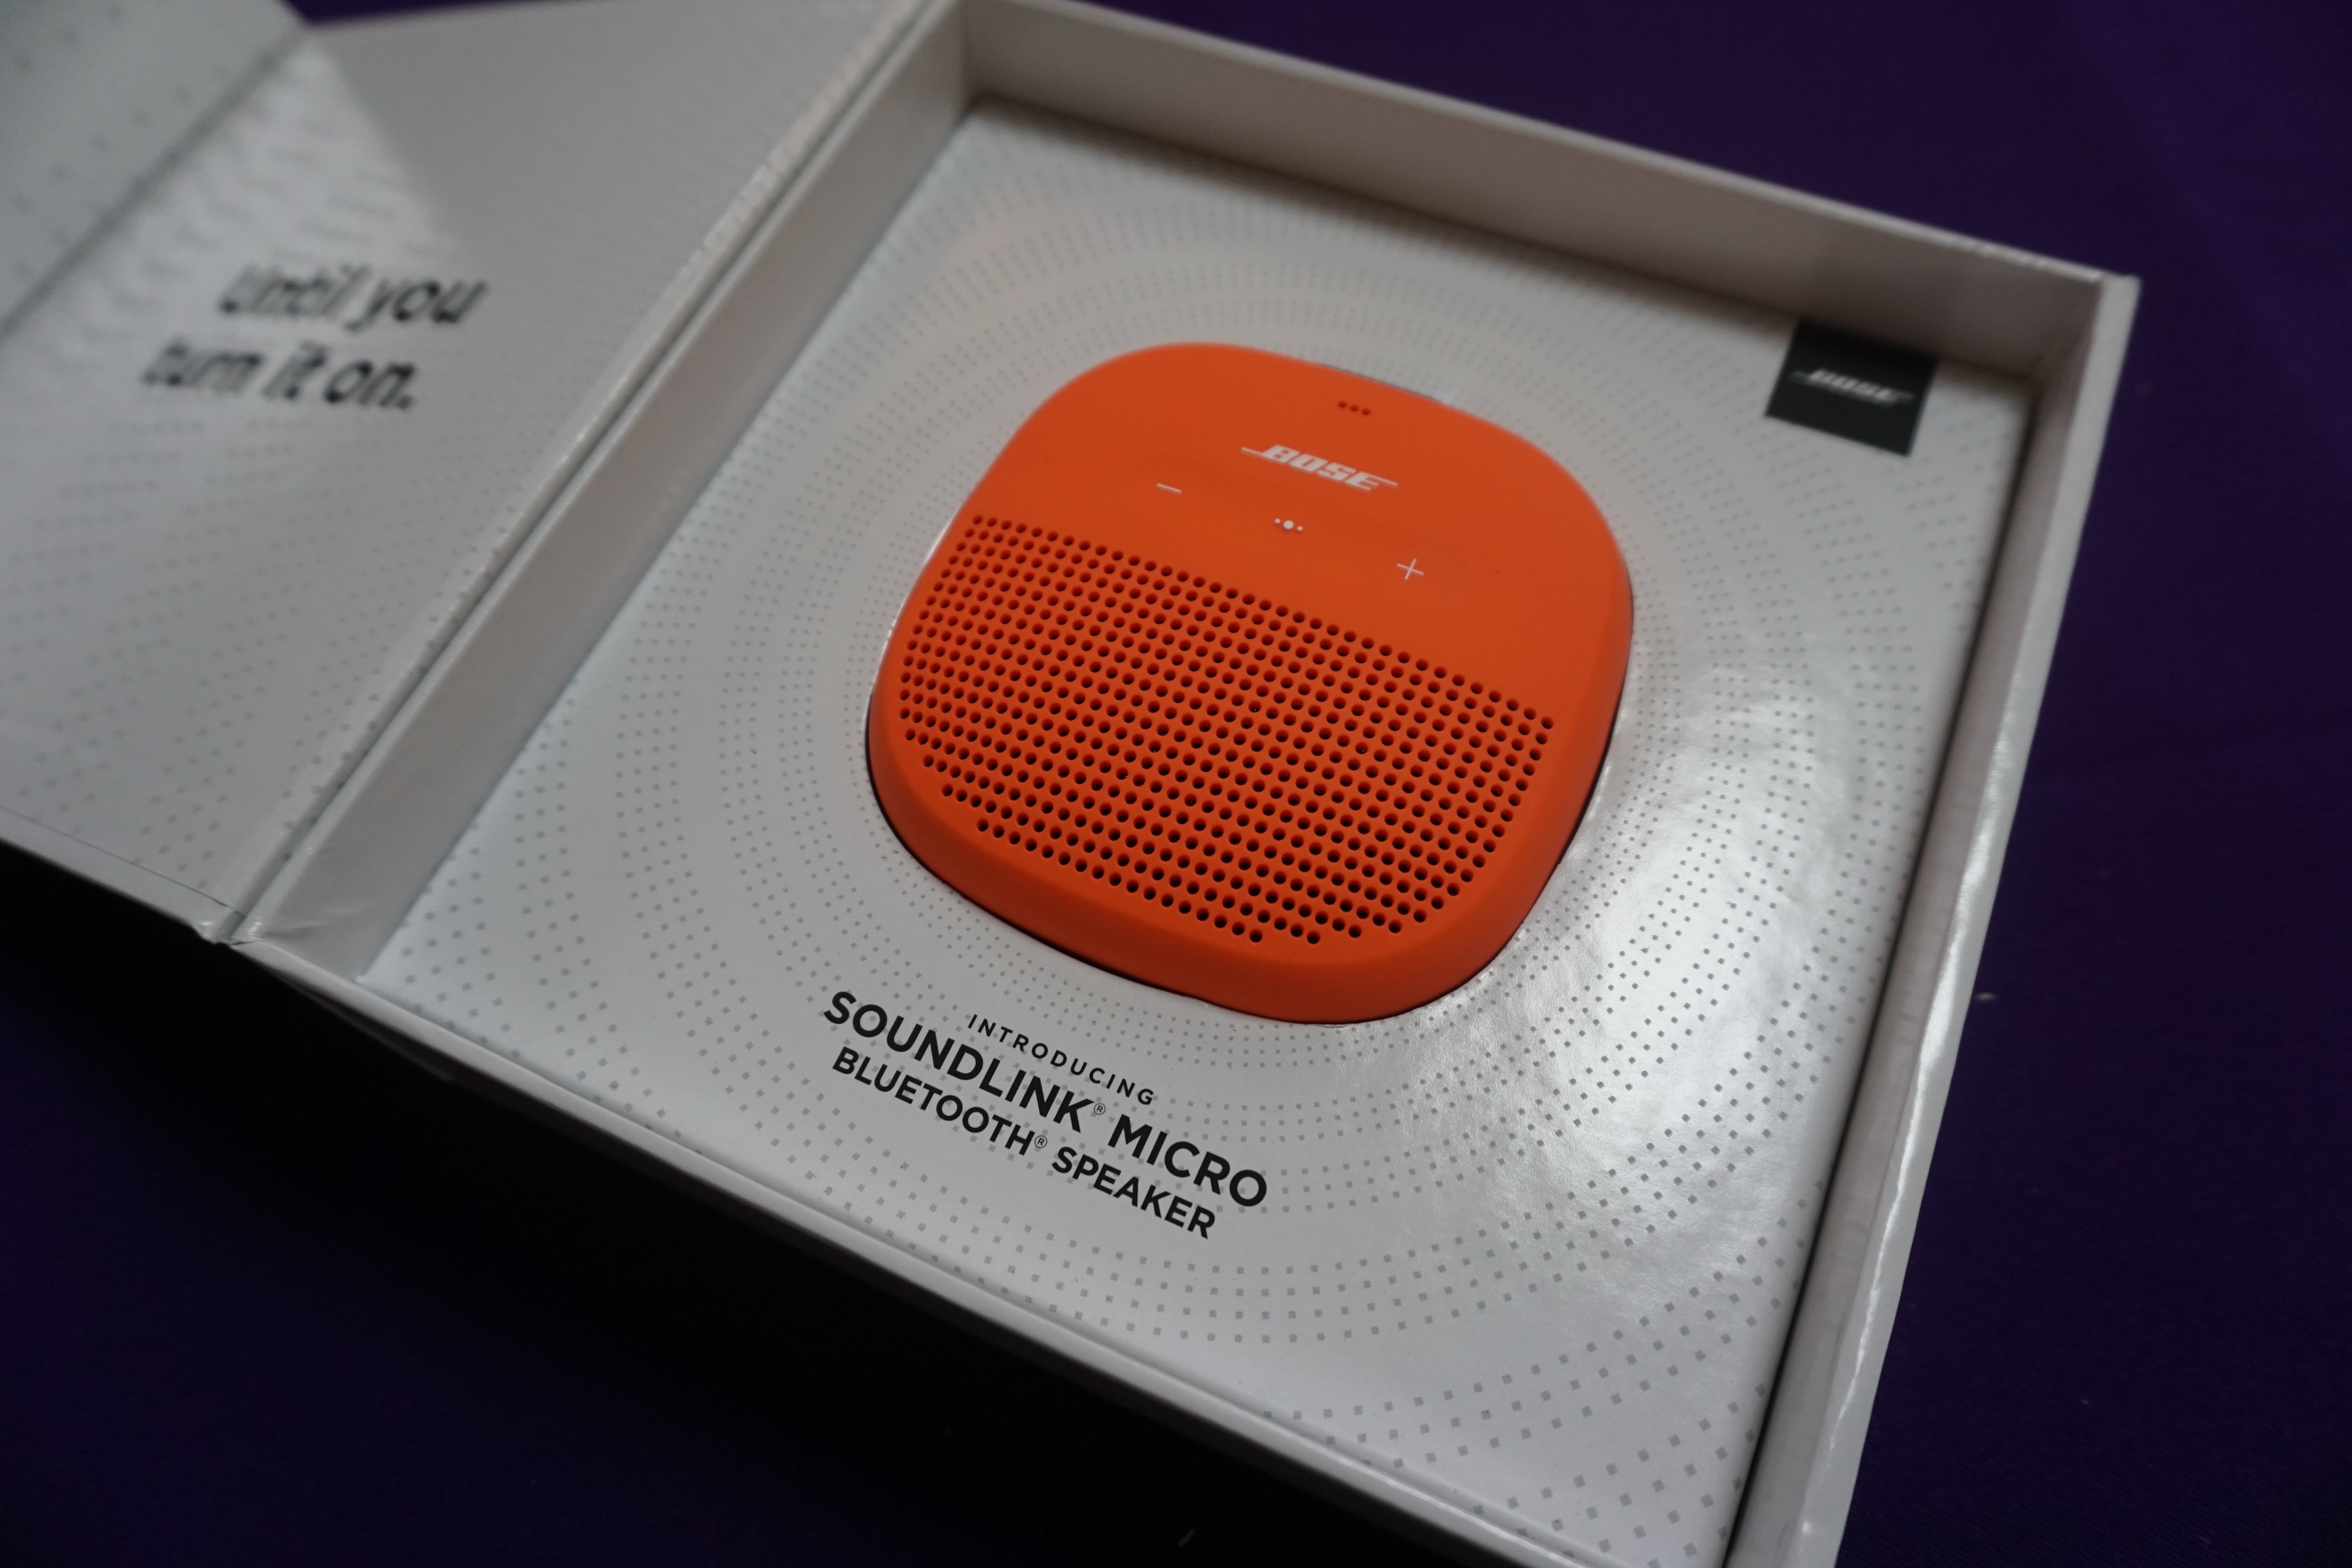 Bose SoundLink Micro speaker in orange in its box.